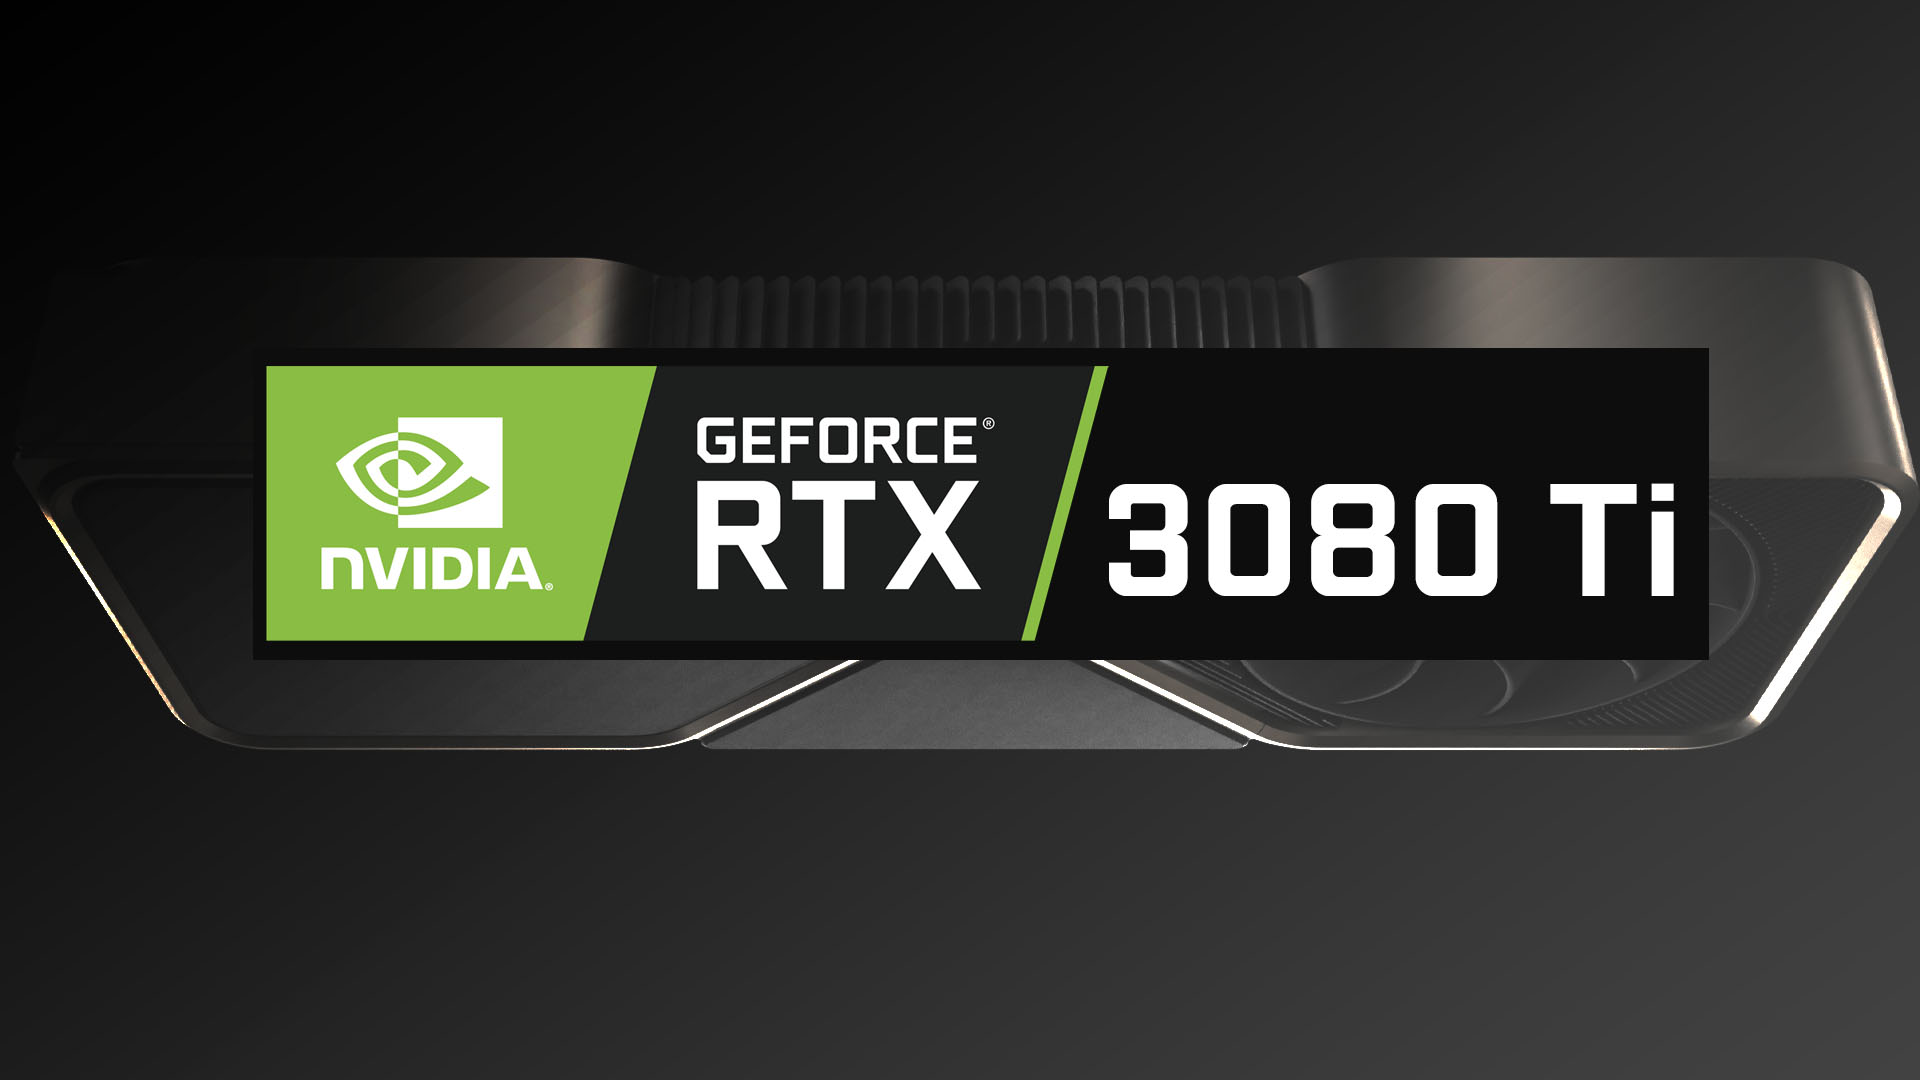 GeForce RTX 3080 Tiは4月、RTX 3070 Tiは5月に登場する見込み